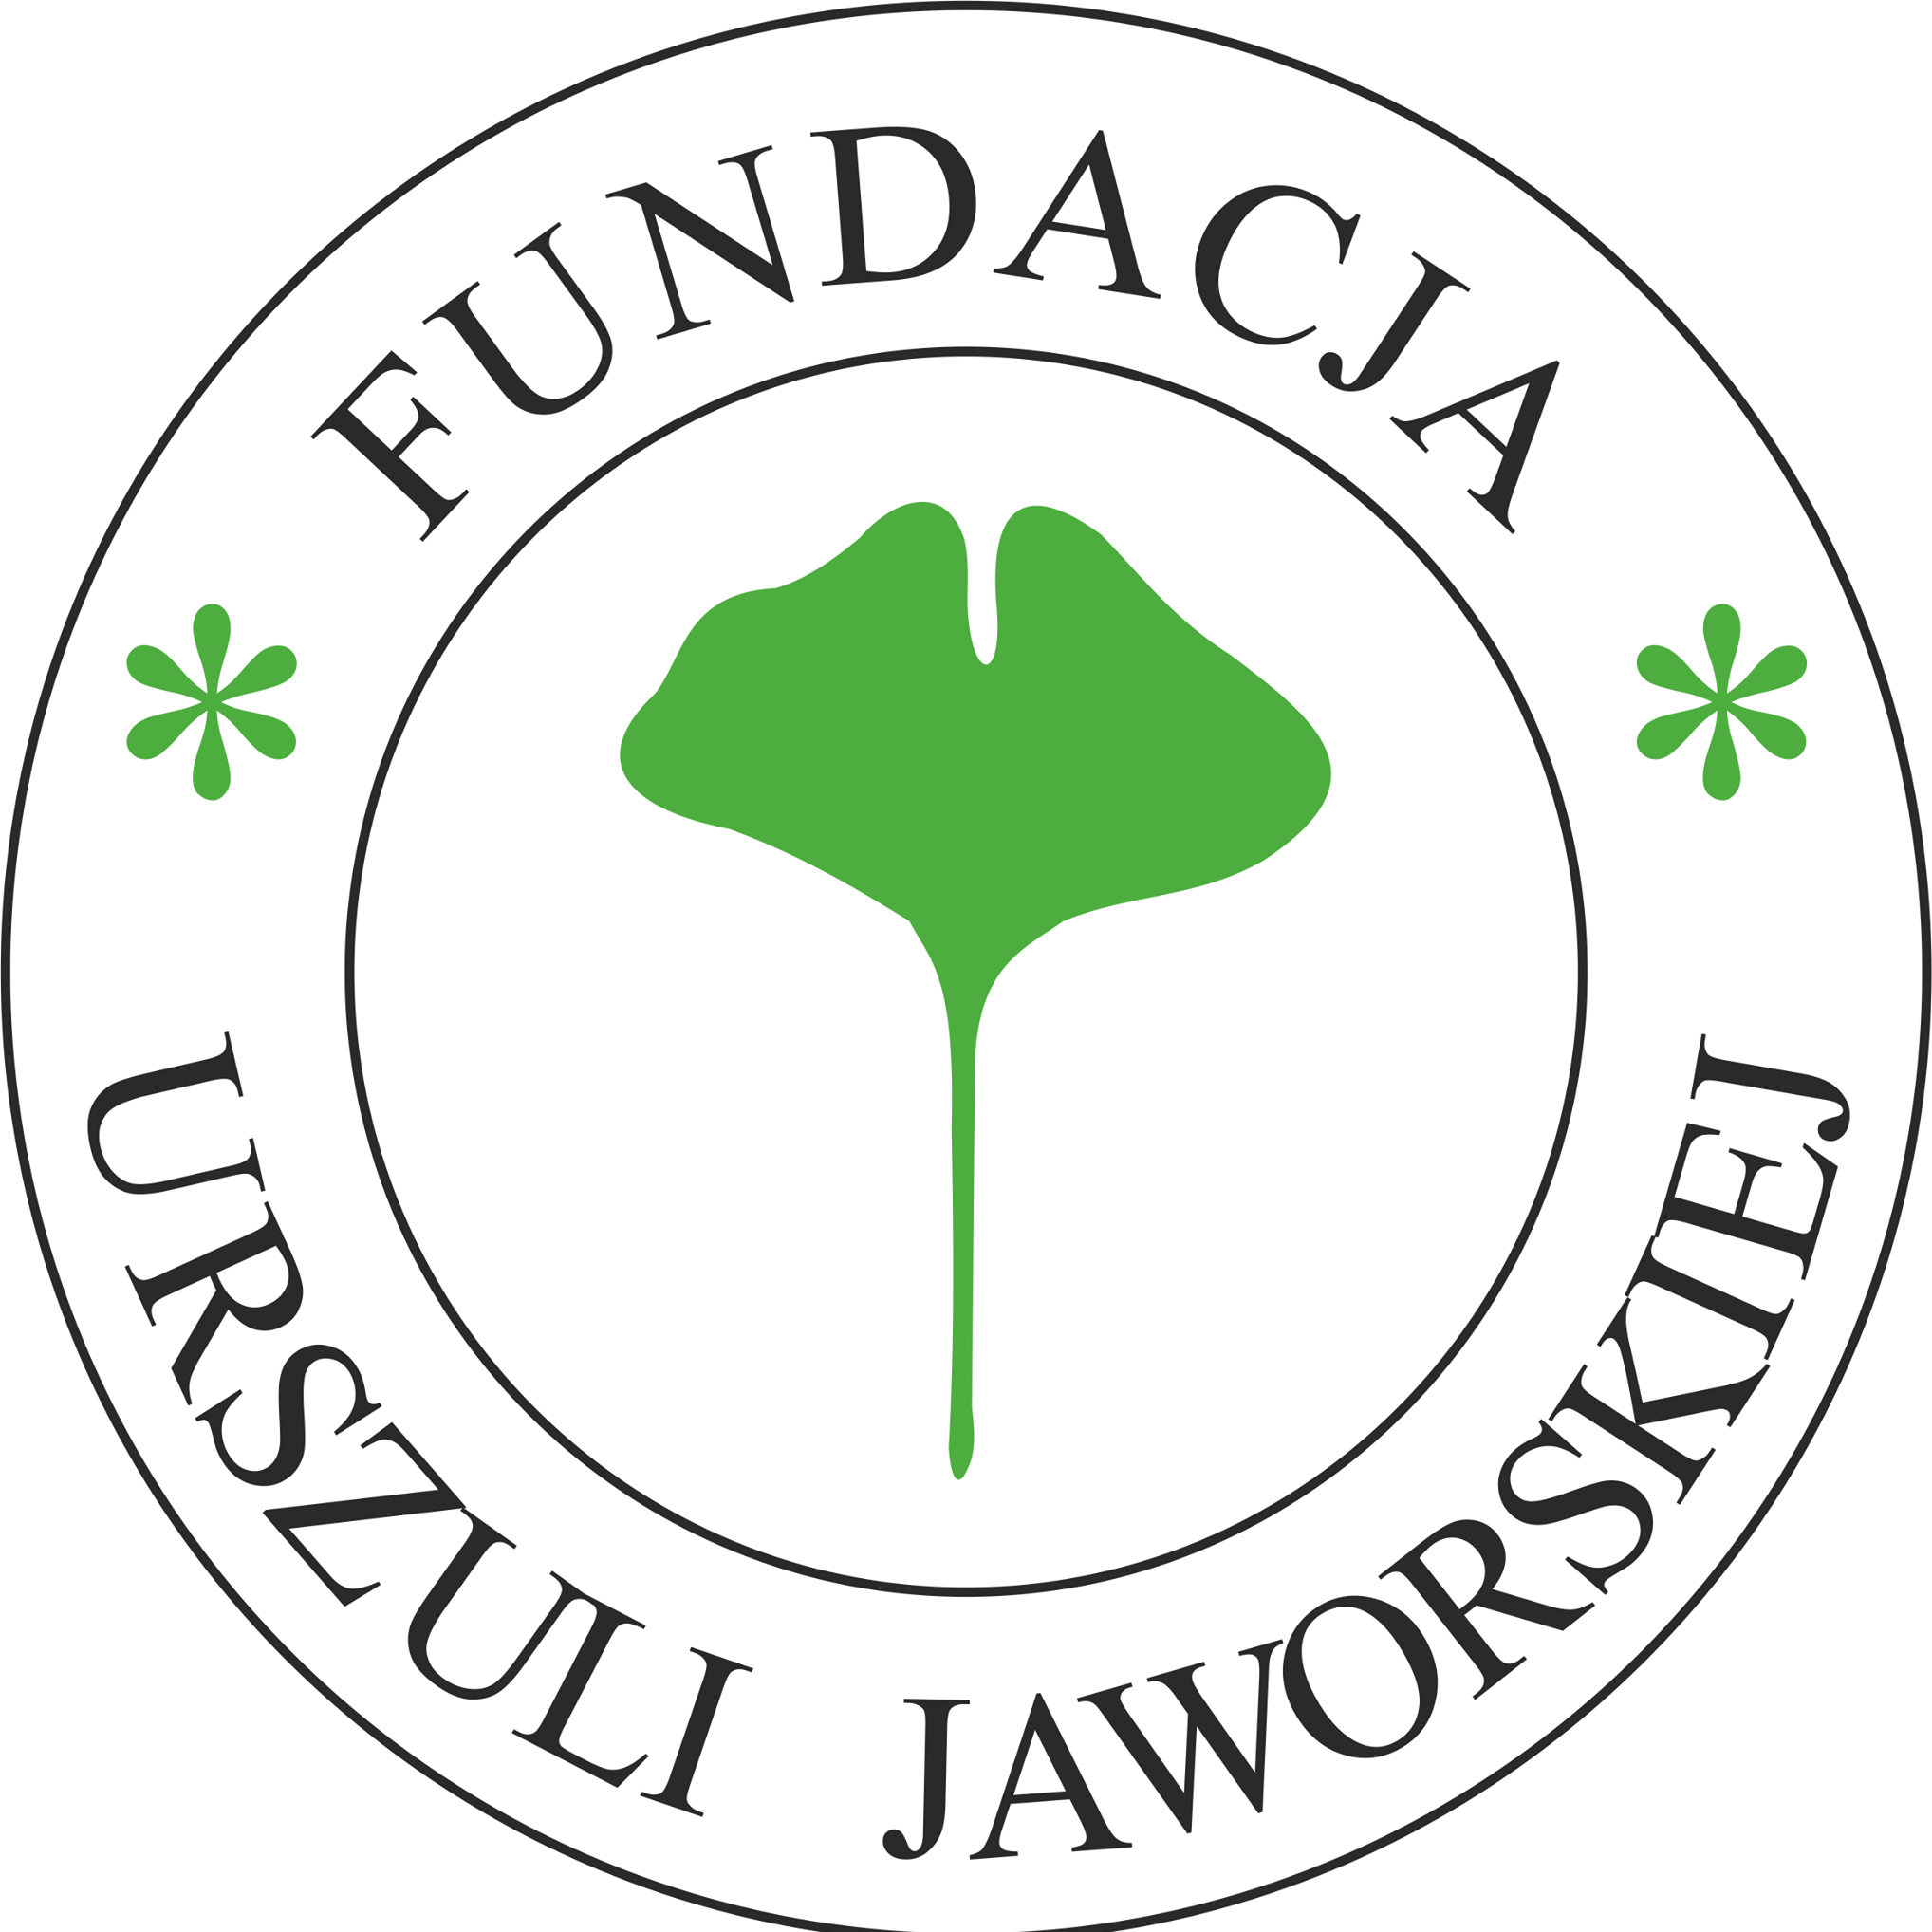 Fundacja Urszuli Jaworskiej